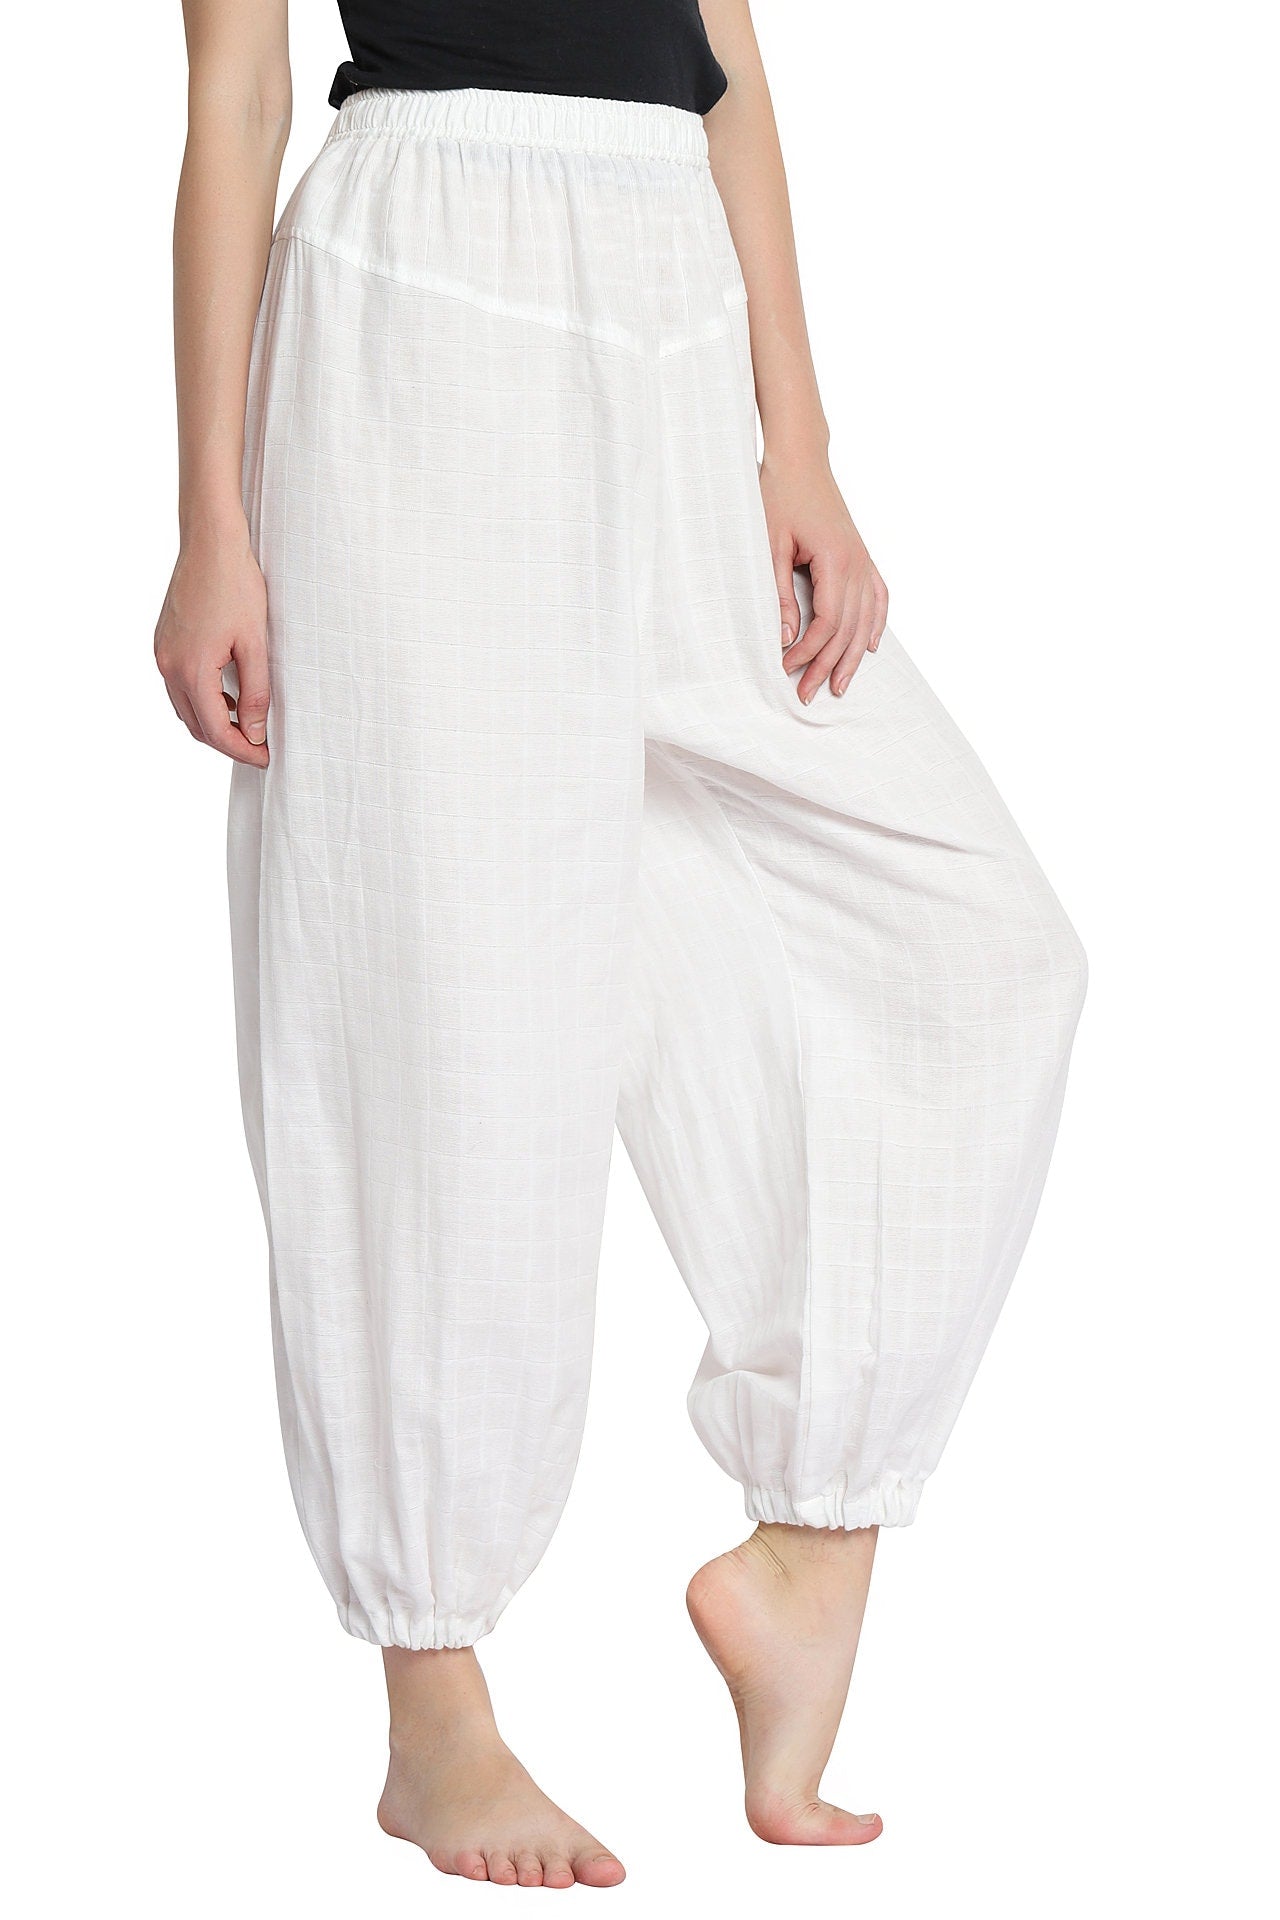 Buy Apanakah Pipe Dream Organic Cotton Pants For Women Online – APANAKAH